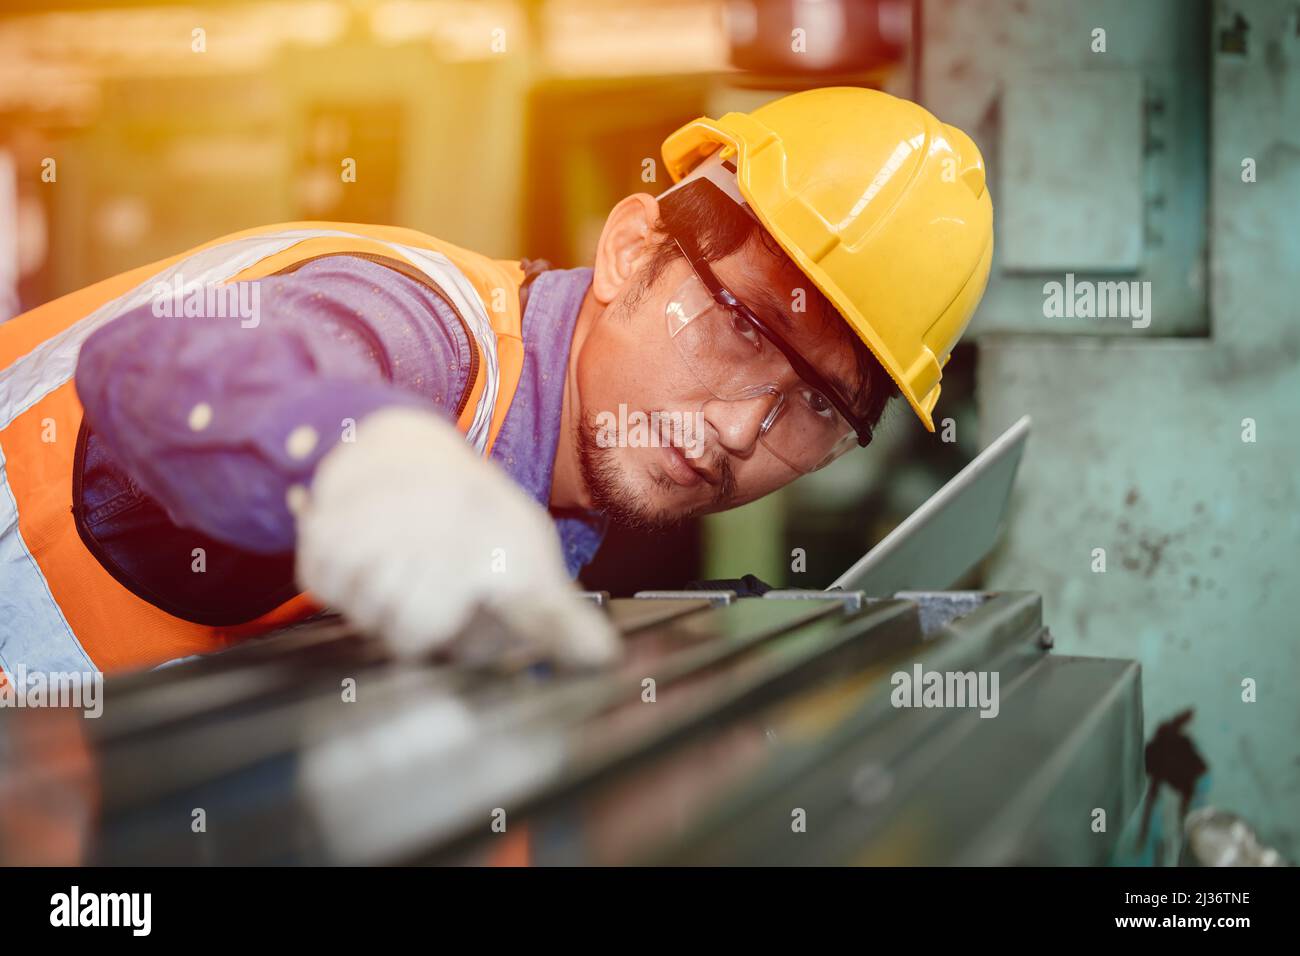 Un ingénieur asiatique a l'intention de travailler professionnellement dans l'industrie de l'acier, travail de détail de haute précision. Banque D'Images